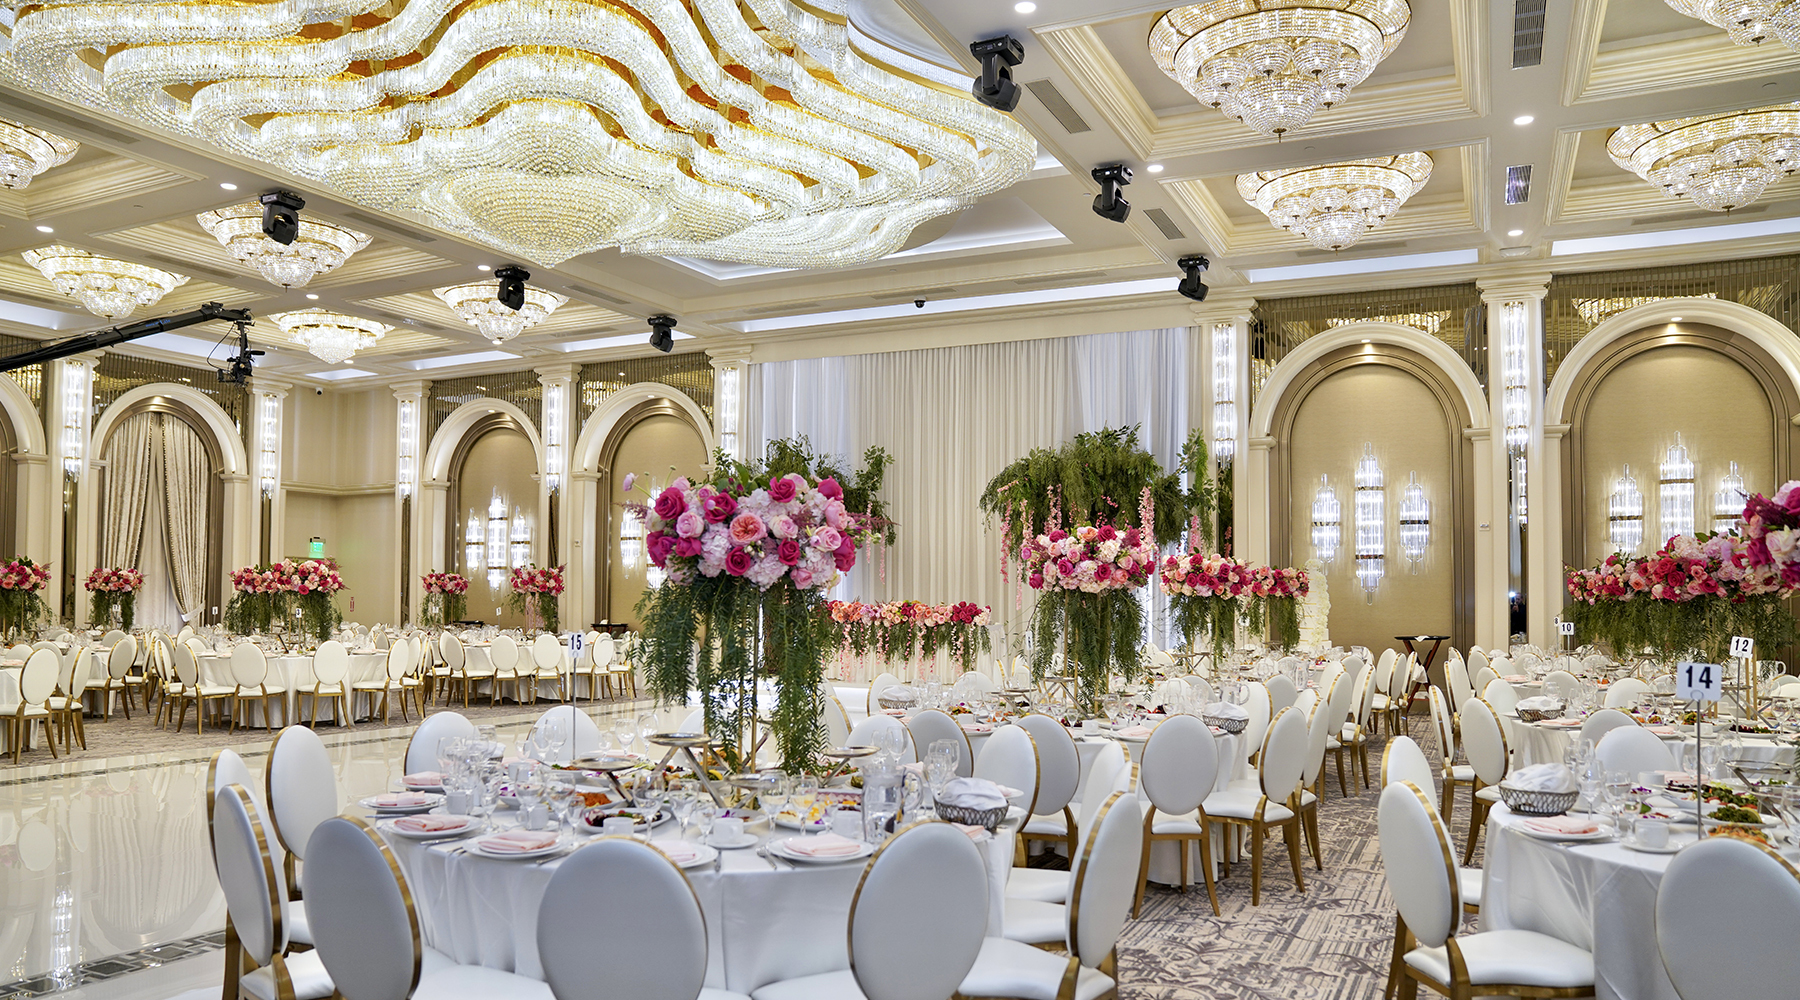 Renaissance Banquet Hall - Grand Ballroom